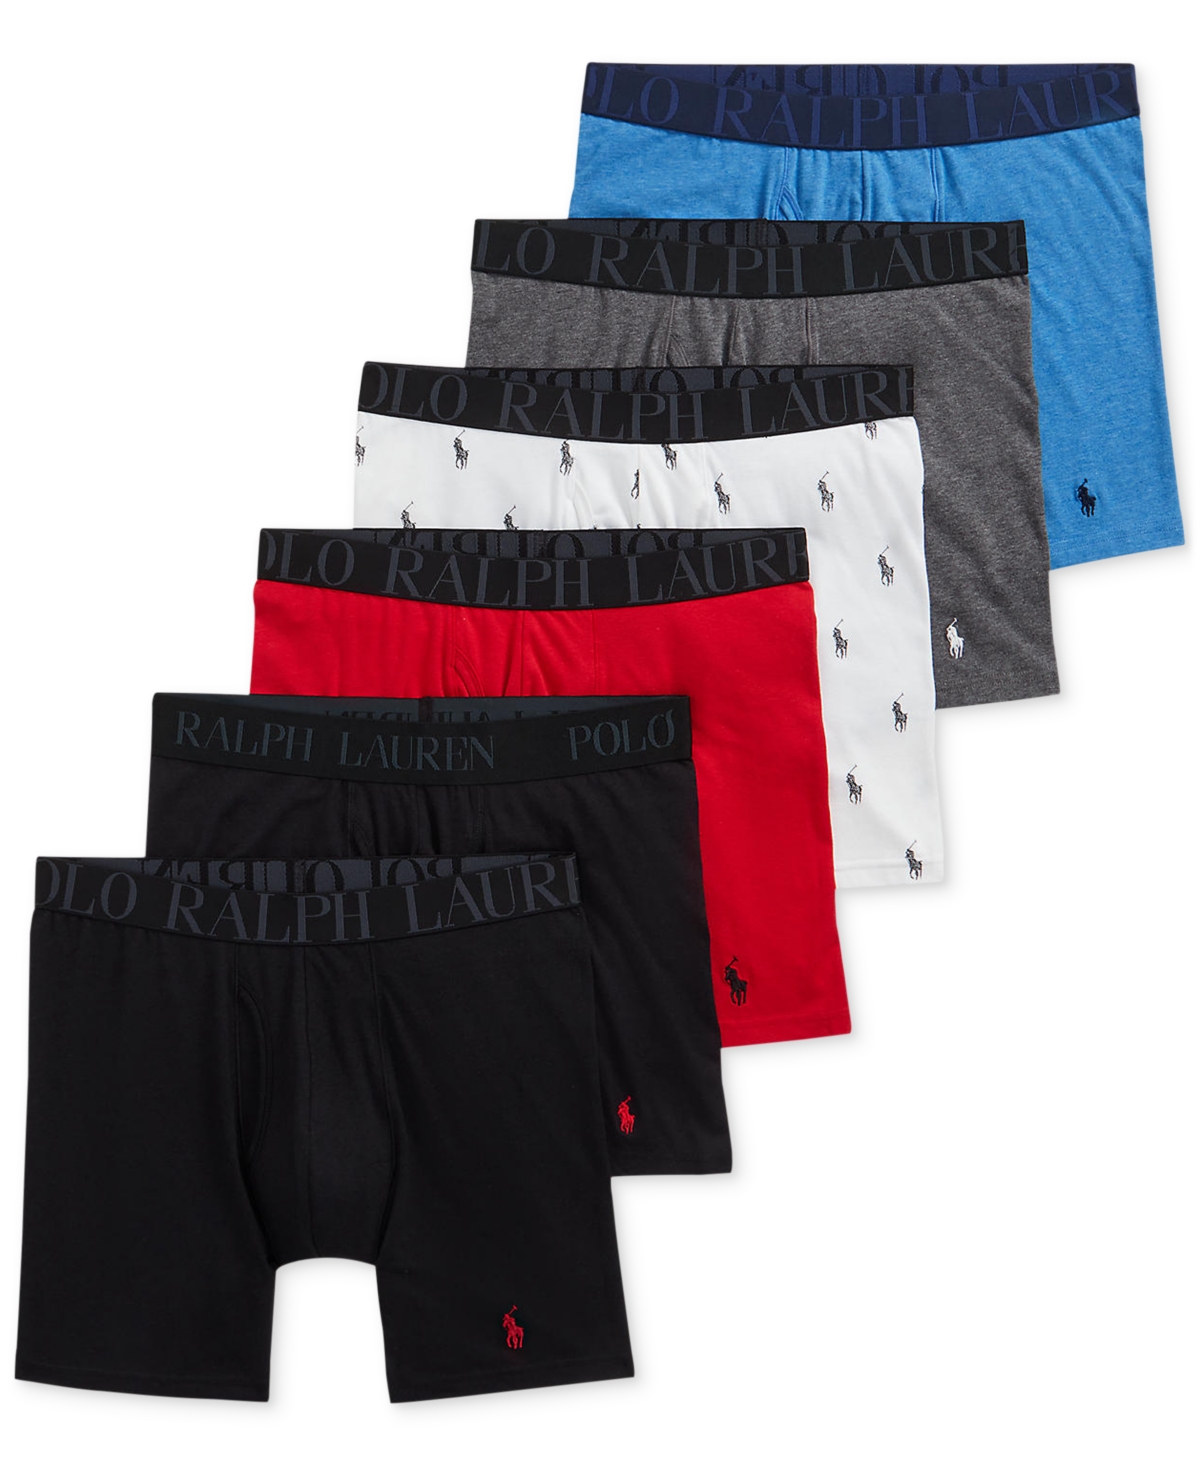 Polo Ralph Lauren Men's 5 Pack Classic Stretch Fit Boxer Briefs + 1 Bonus 4d Flex Cooling Modal Boxer Briefs In Polo Black,red